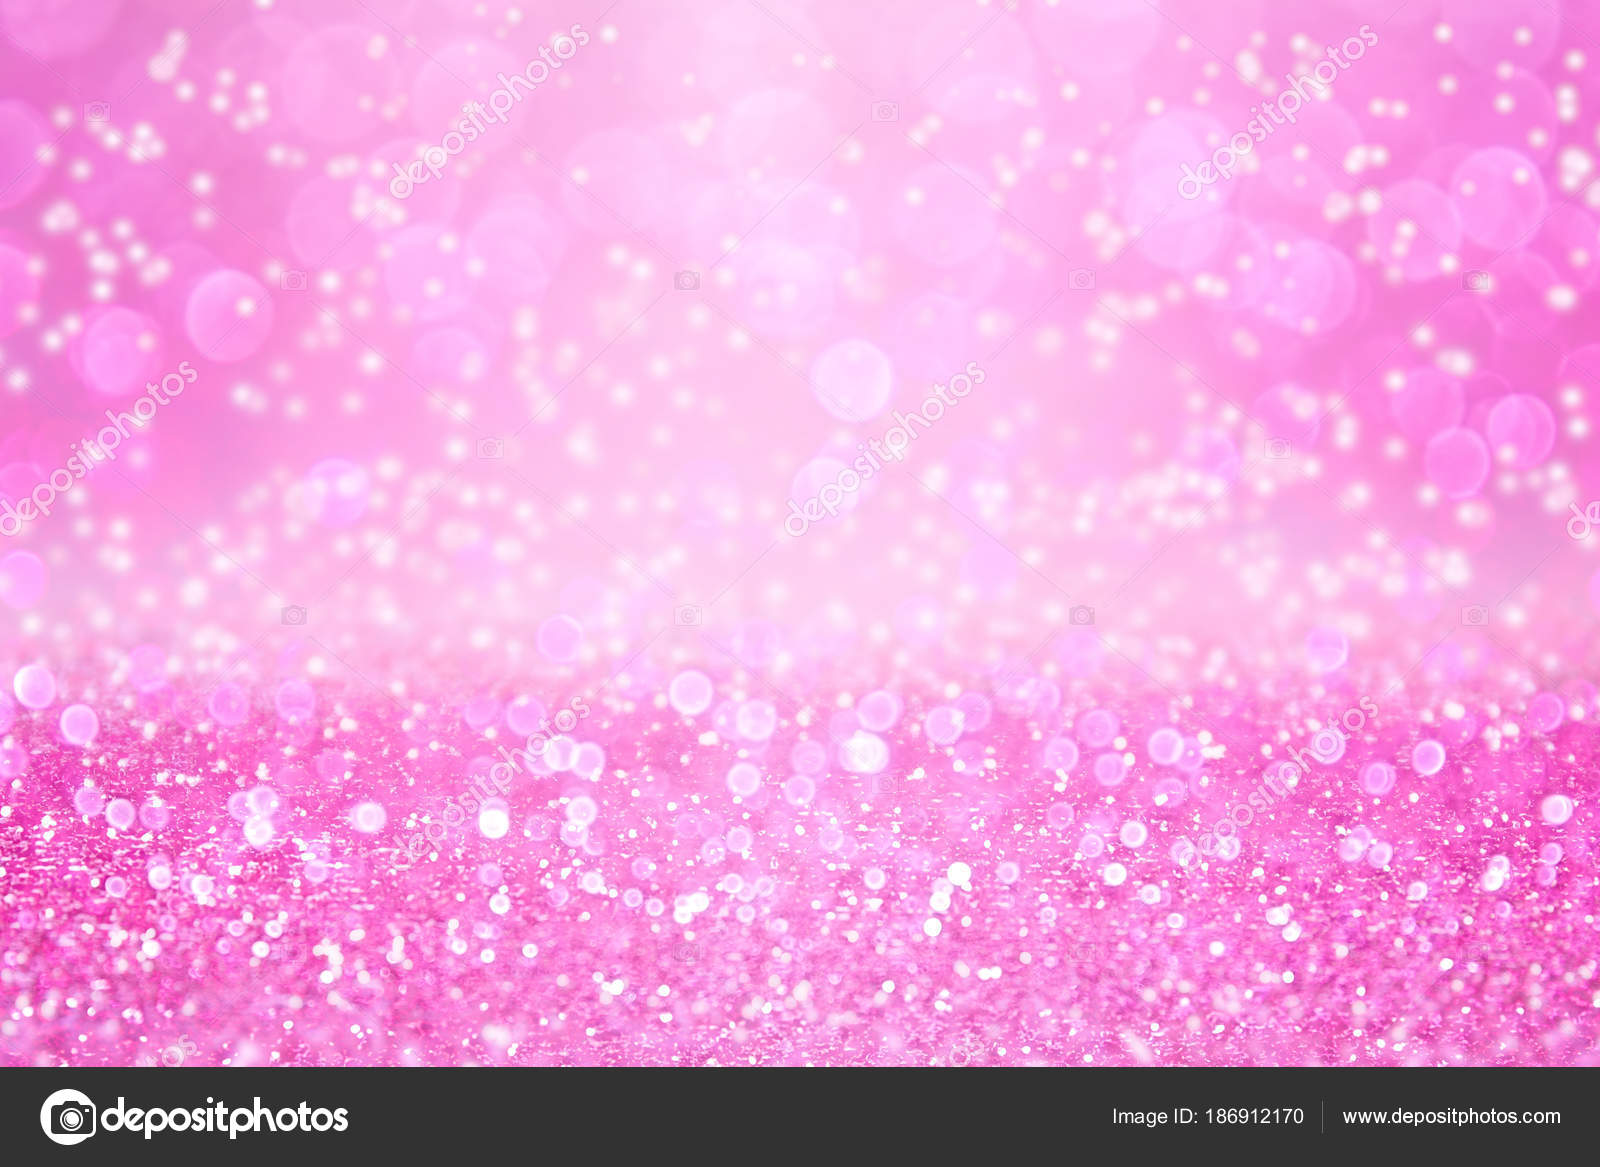 Pink Glitter - Princess Party: Trang trí tiệc sinh nhật cho cô công chúa của bạn sẽ không thể thiếu những chi tiết lấp lánh và đặc biệt. Hãy khám phá bộ sưu tập hình ảnh chủ đề sinh nhật cô công chúa với gam màu hồng tuyệt đẹp, chắc chắn sẽ khiến bữa tiệc của bạn thêm phần lung linh.